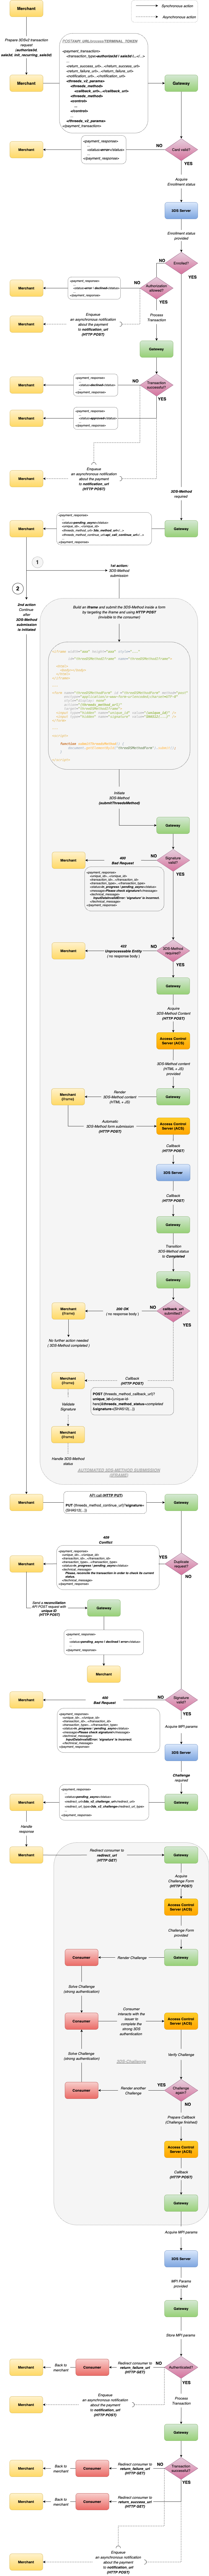 3DSv2 authentication flow diagram with 3DS-Method